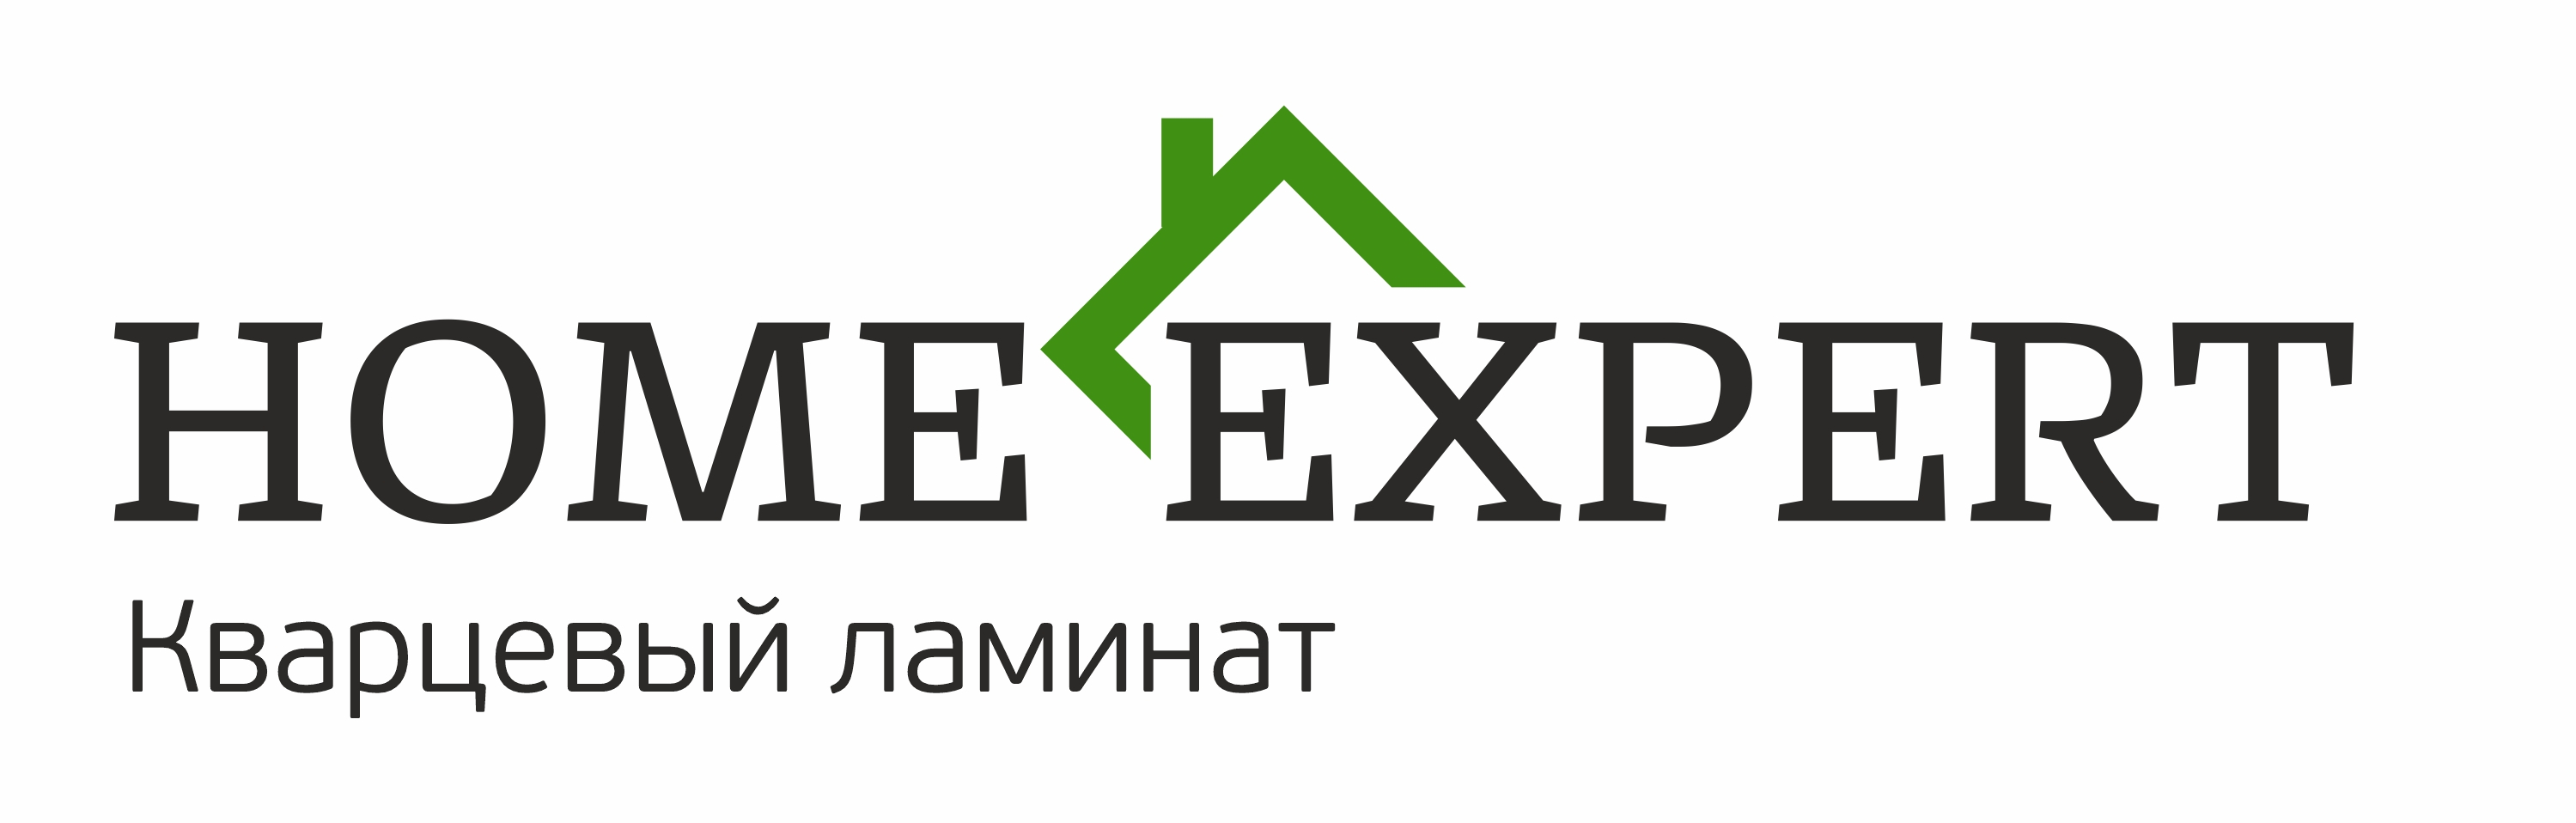 HOME EXPERT